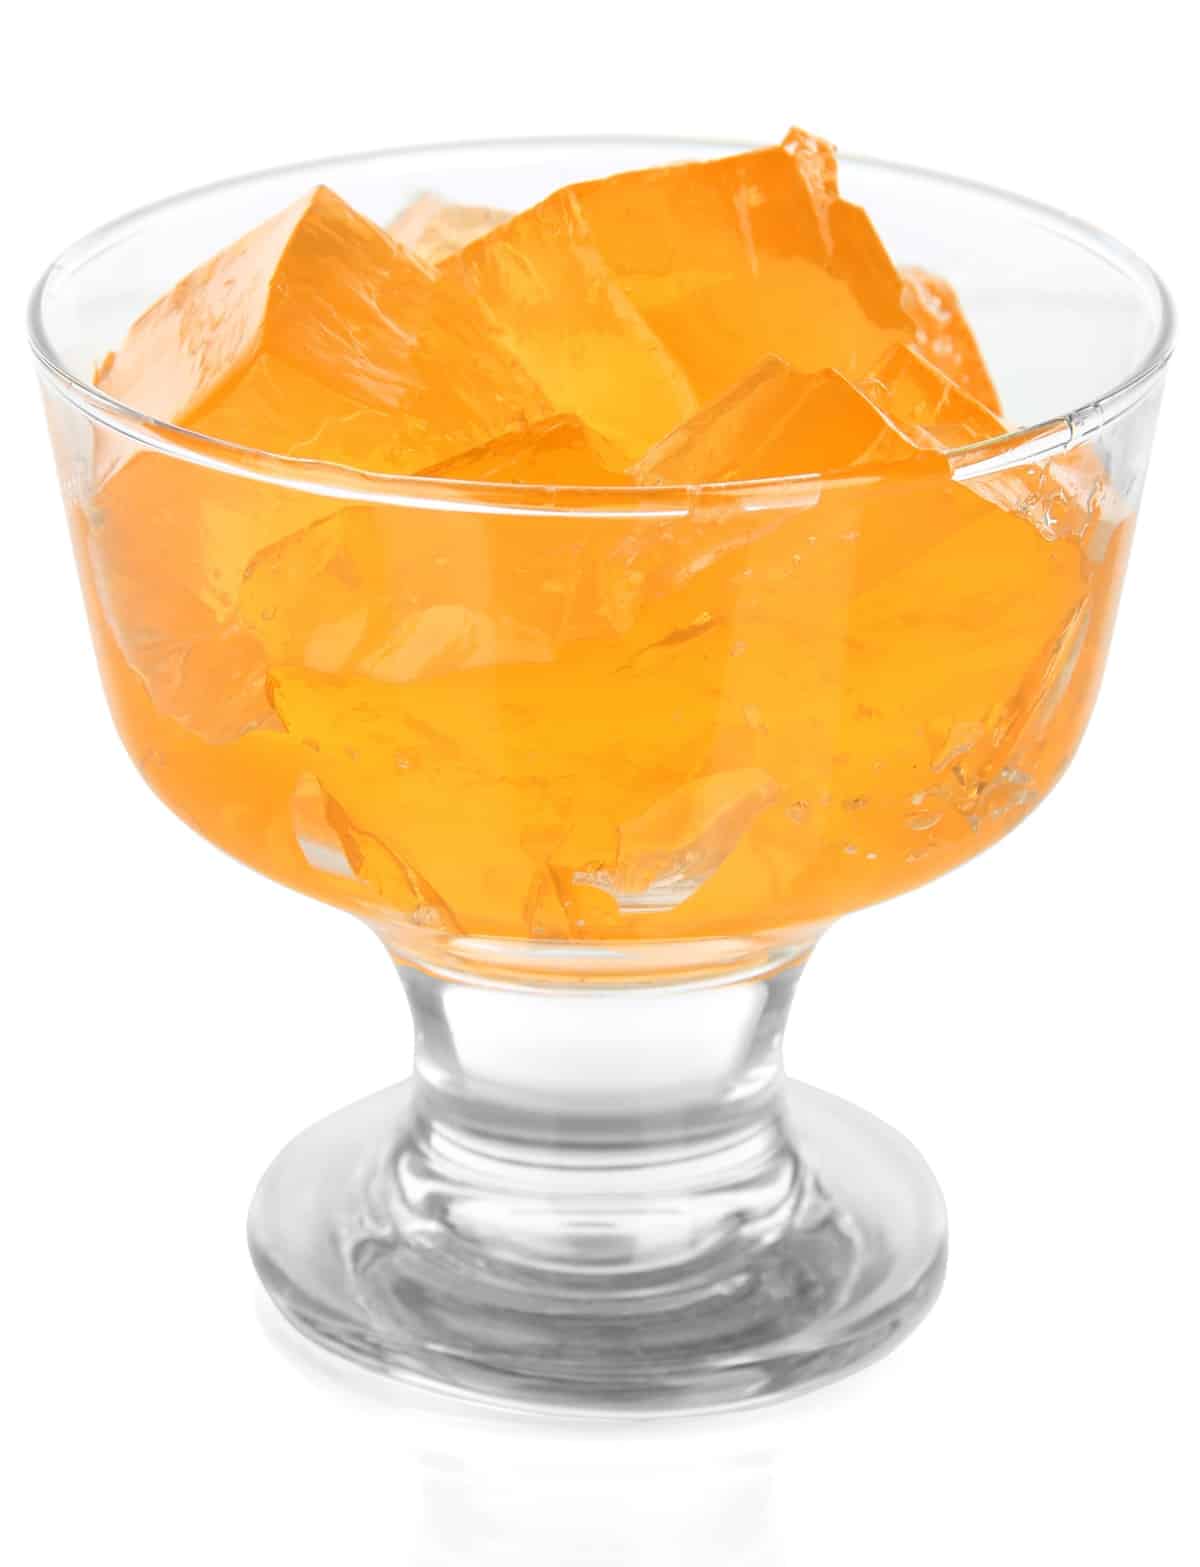 orange jello cut into cubes in a parfait glass.